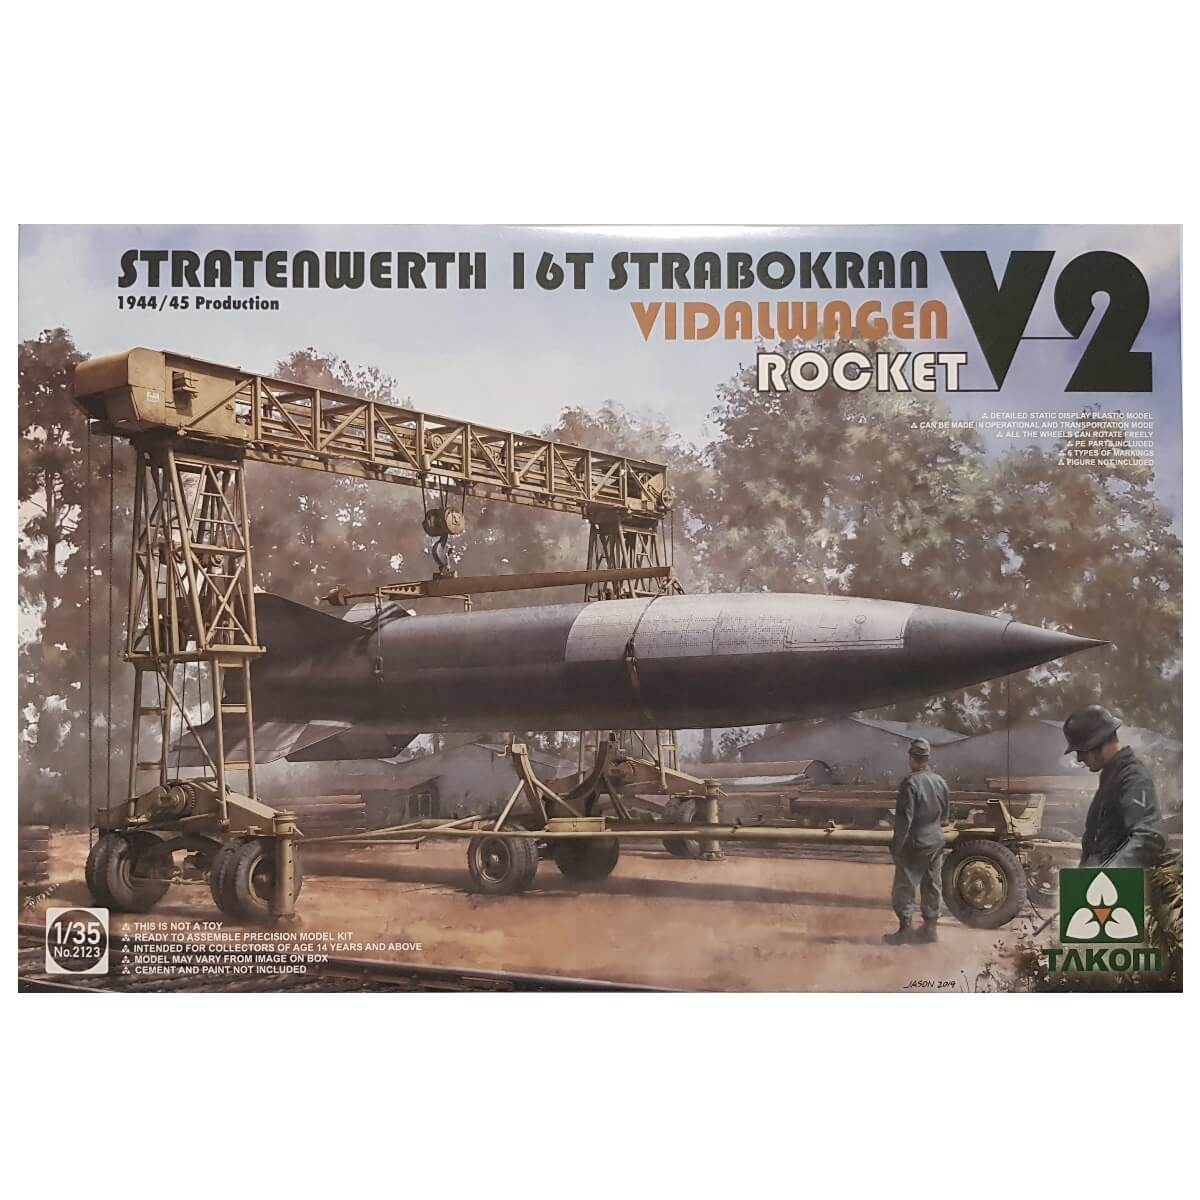 1:35 Stratenwerth 16T Strabokran Vidalwagen V2 Rocket - TAKOM